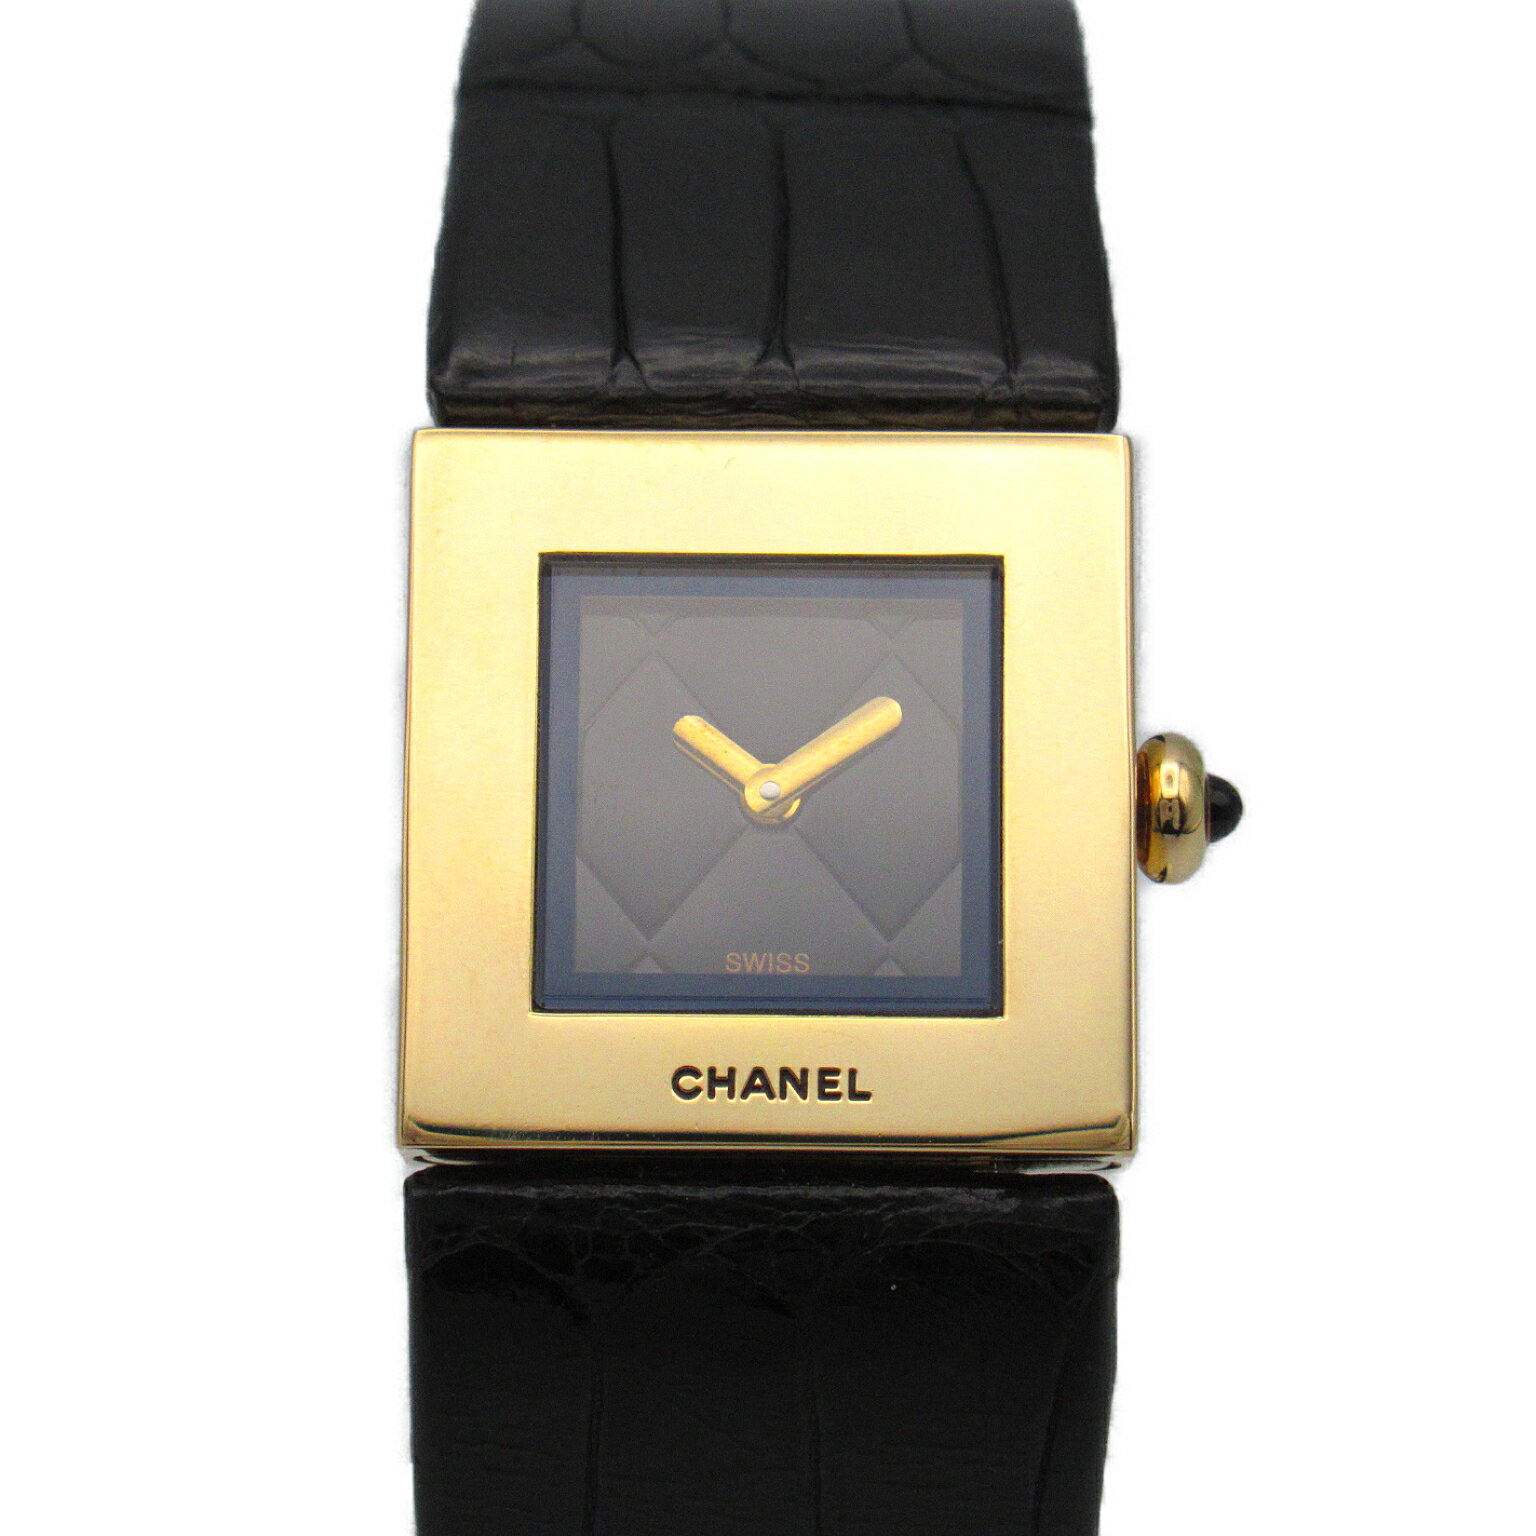 シャネル CHANEL マトラッセ 腕時計 時計 K18（イエローゴールド） レザーベルト クロコ革 レディース ブラック系 H0109 【中古】